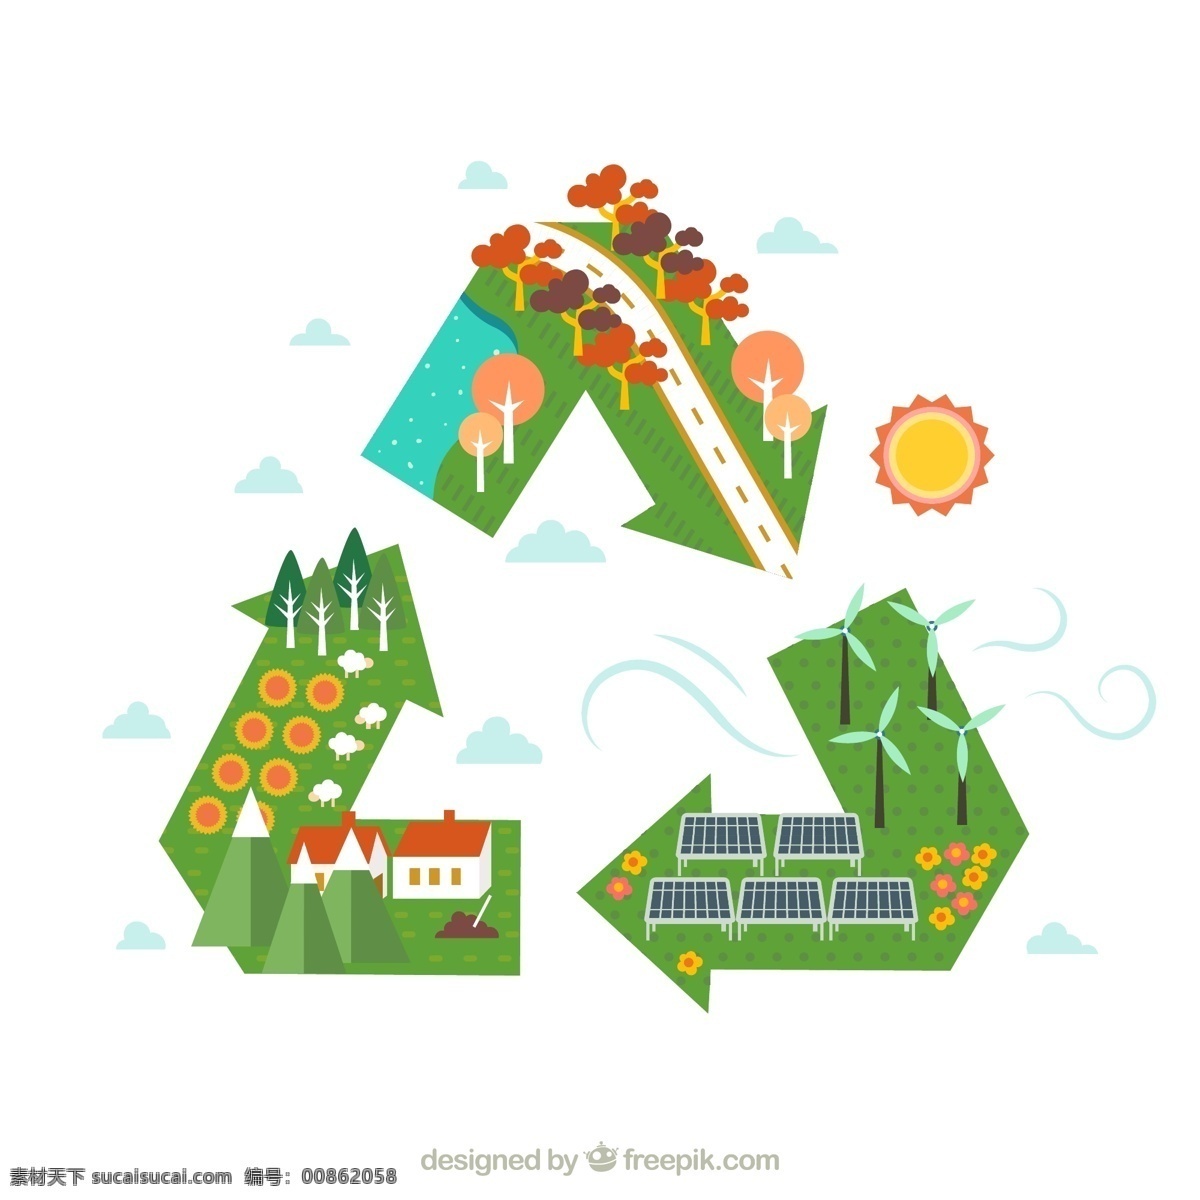 可循 环 标志 上 世界 矢量图 树木 河流 太阳能 能源 太阳 发电风车 房屋 树林 山 绵羊 农场 可循环 环保 白色